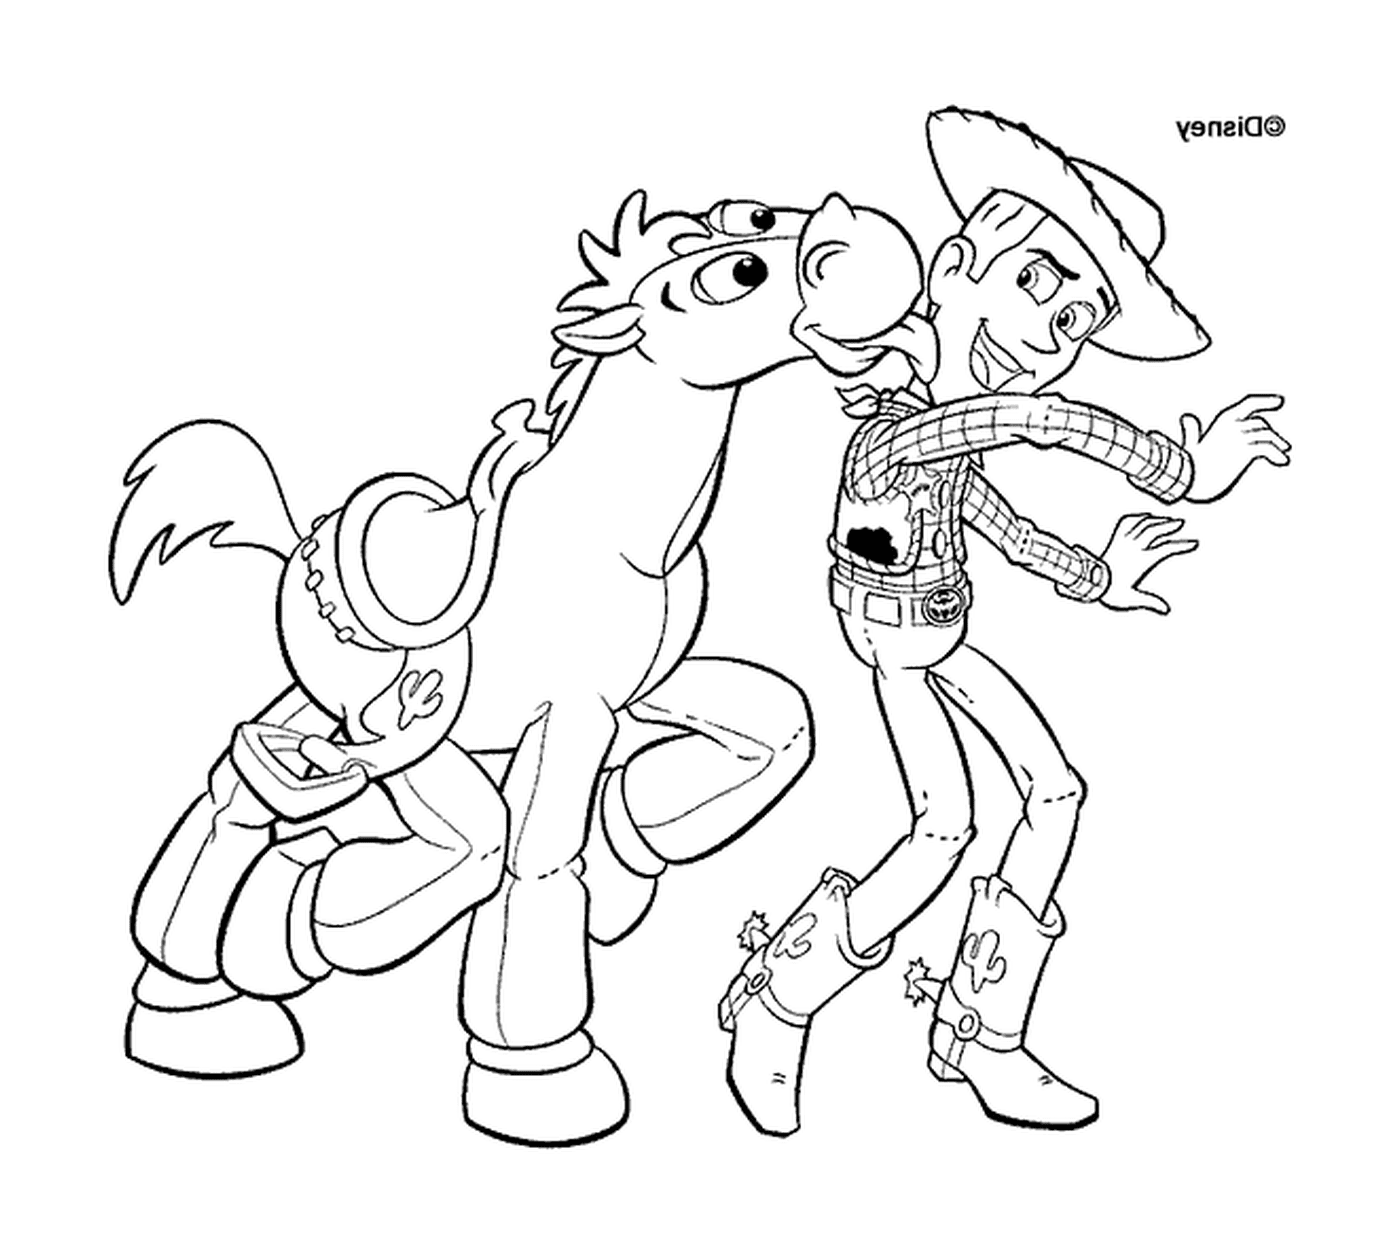 le cow boy Woody et son cheval